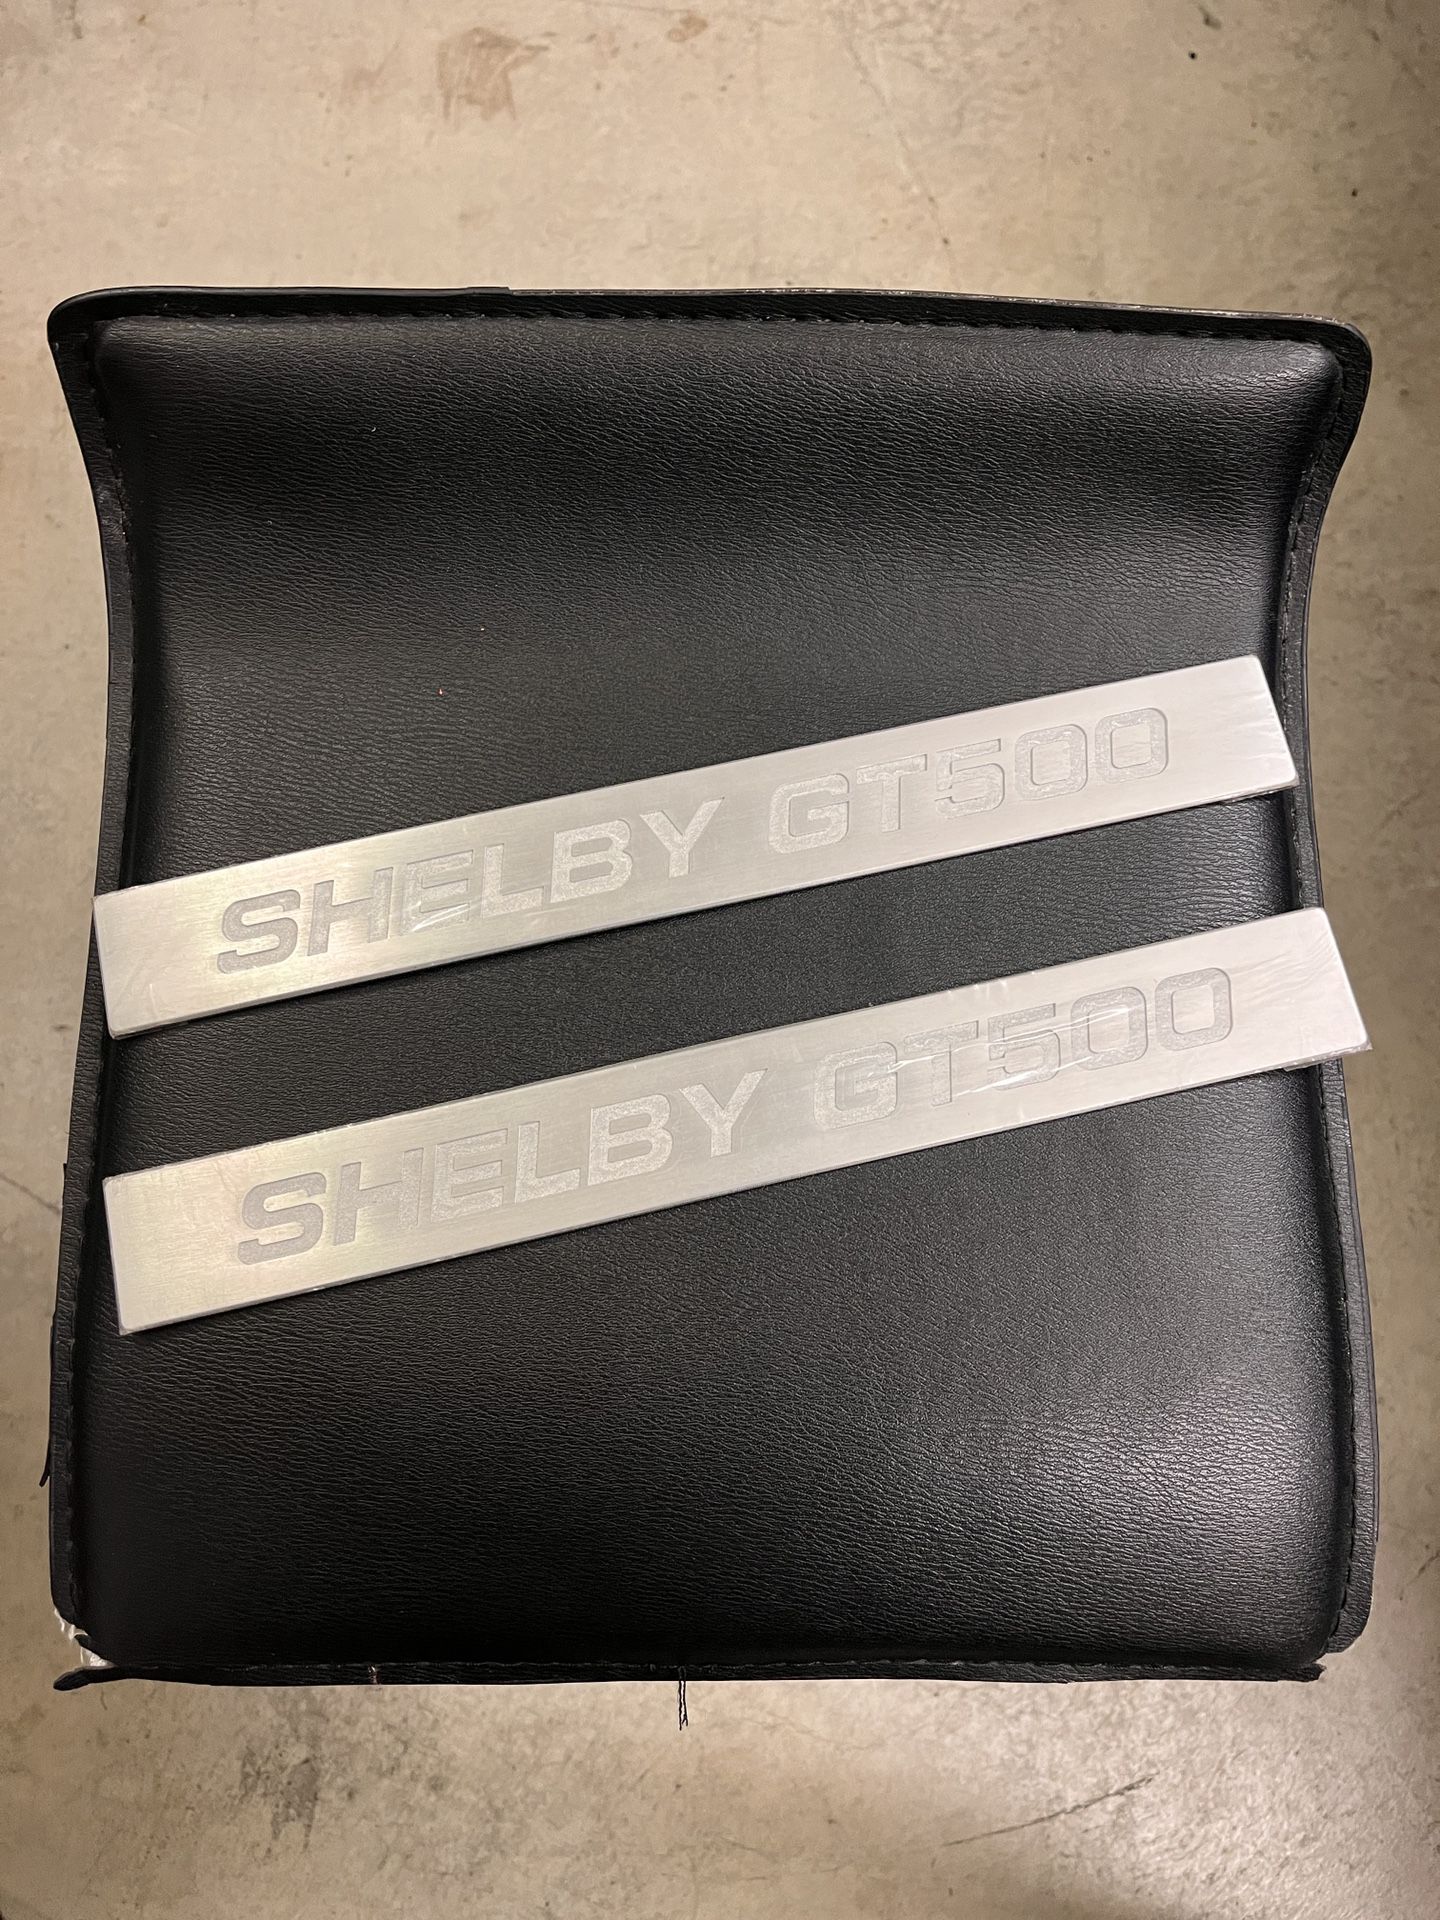 Shelby GT500 Door Sills